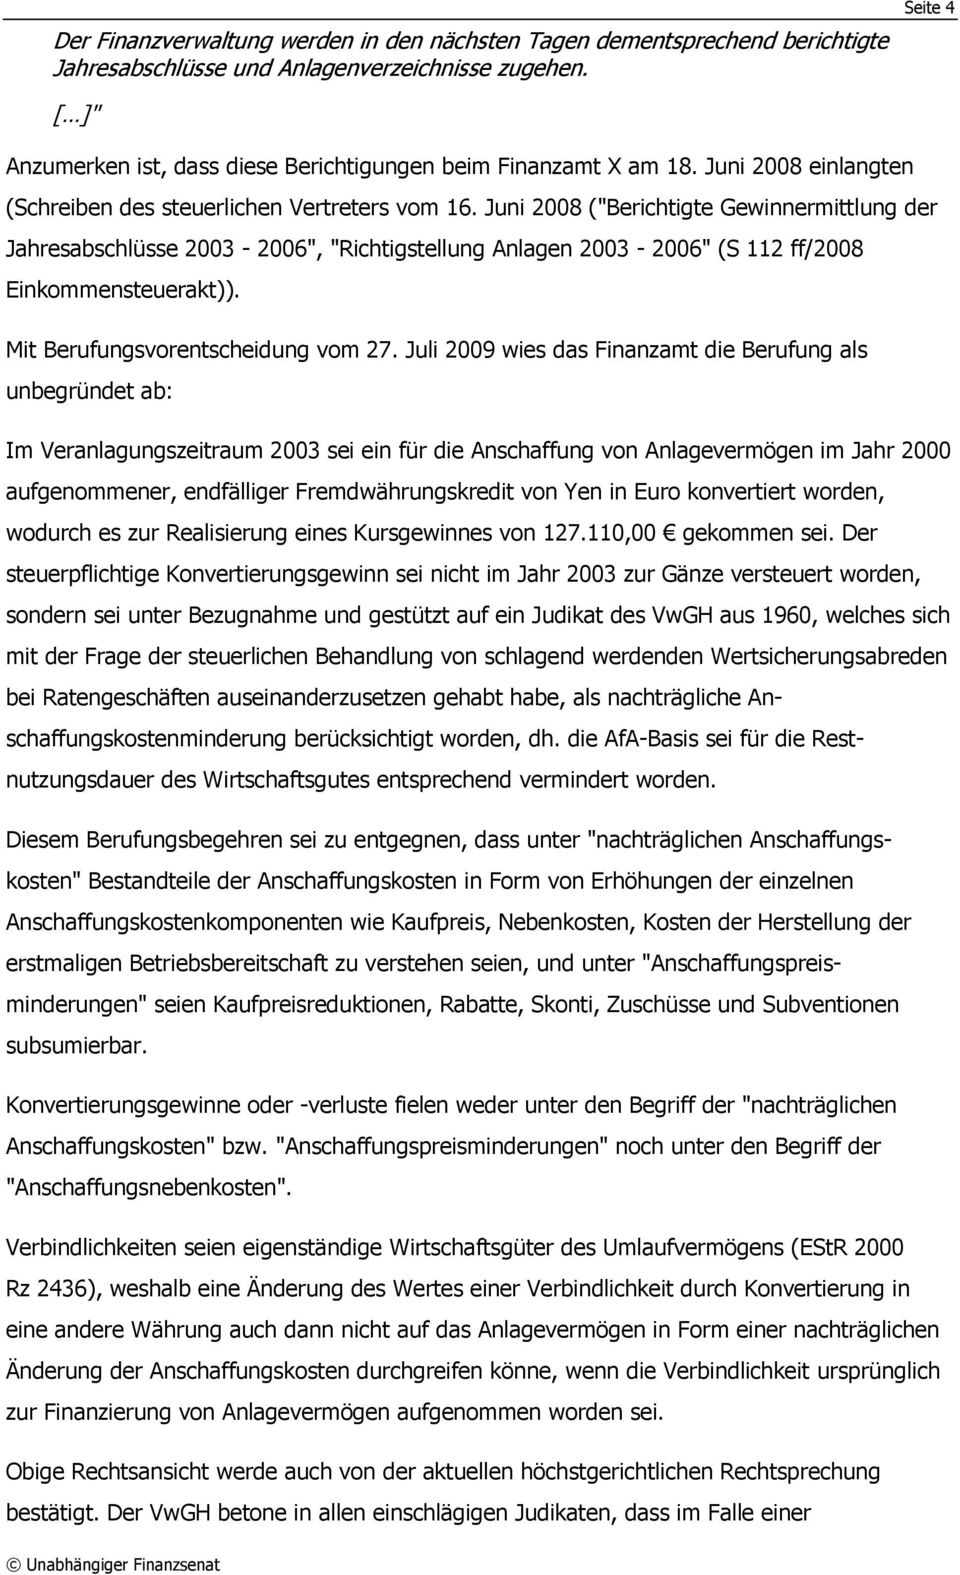 Juni 2008 ("Berichtigte Gewinnermittlung der Jahresabschlüsse 2003-2006", "Richtigstellung Anlagen 2003-2006" (S 112 ff/2008 Einkommensteuerakt)). Mit Berufungsvorentscheidung vom 27.